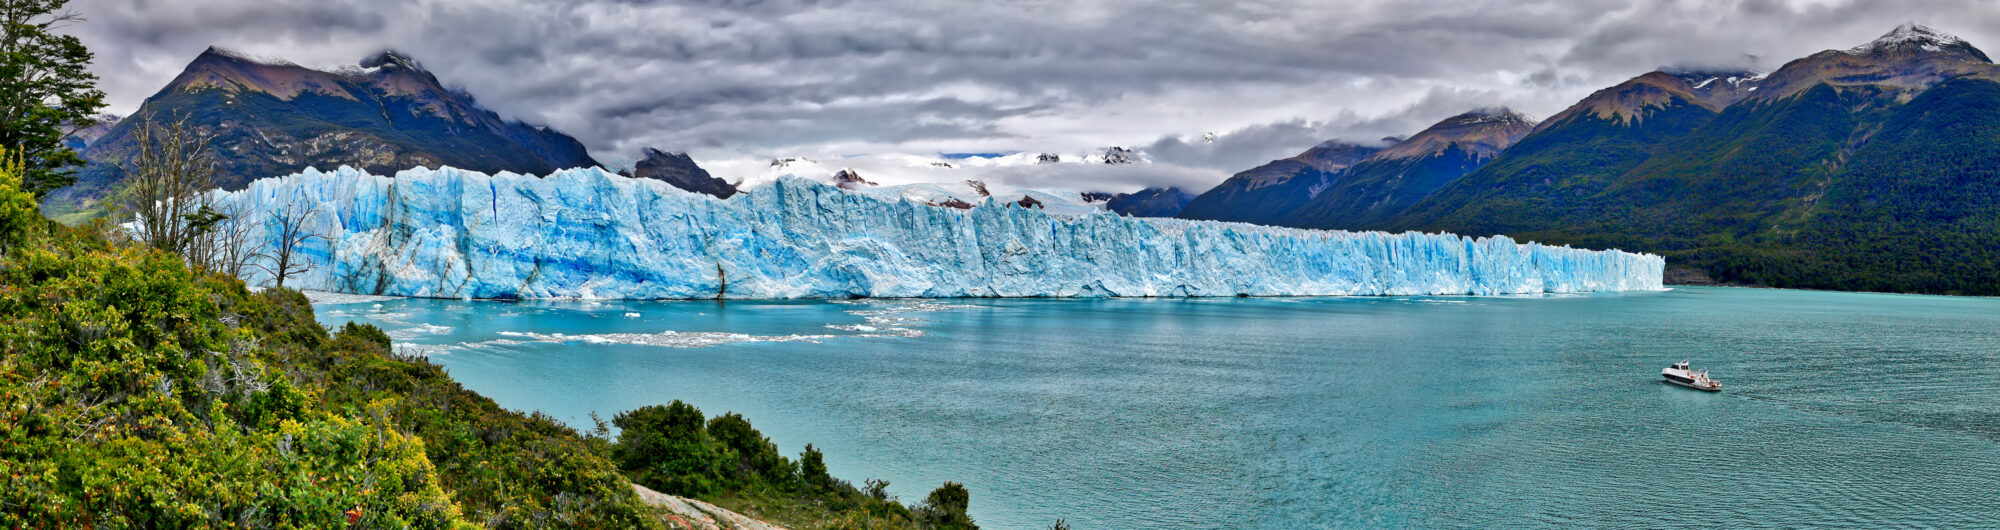 patagonia, ziemia ognista